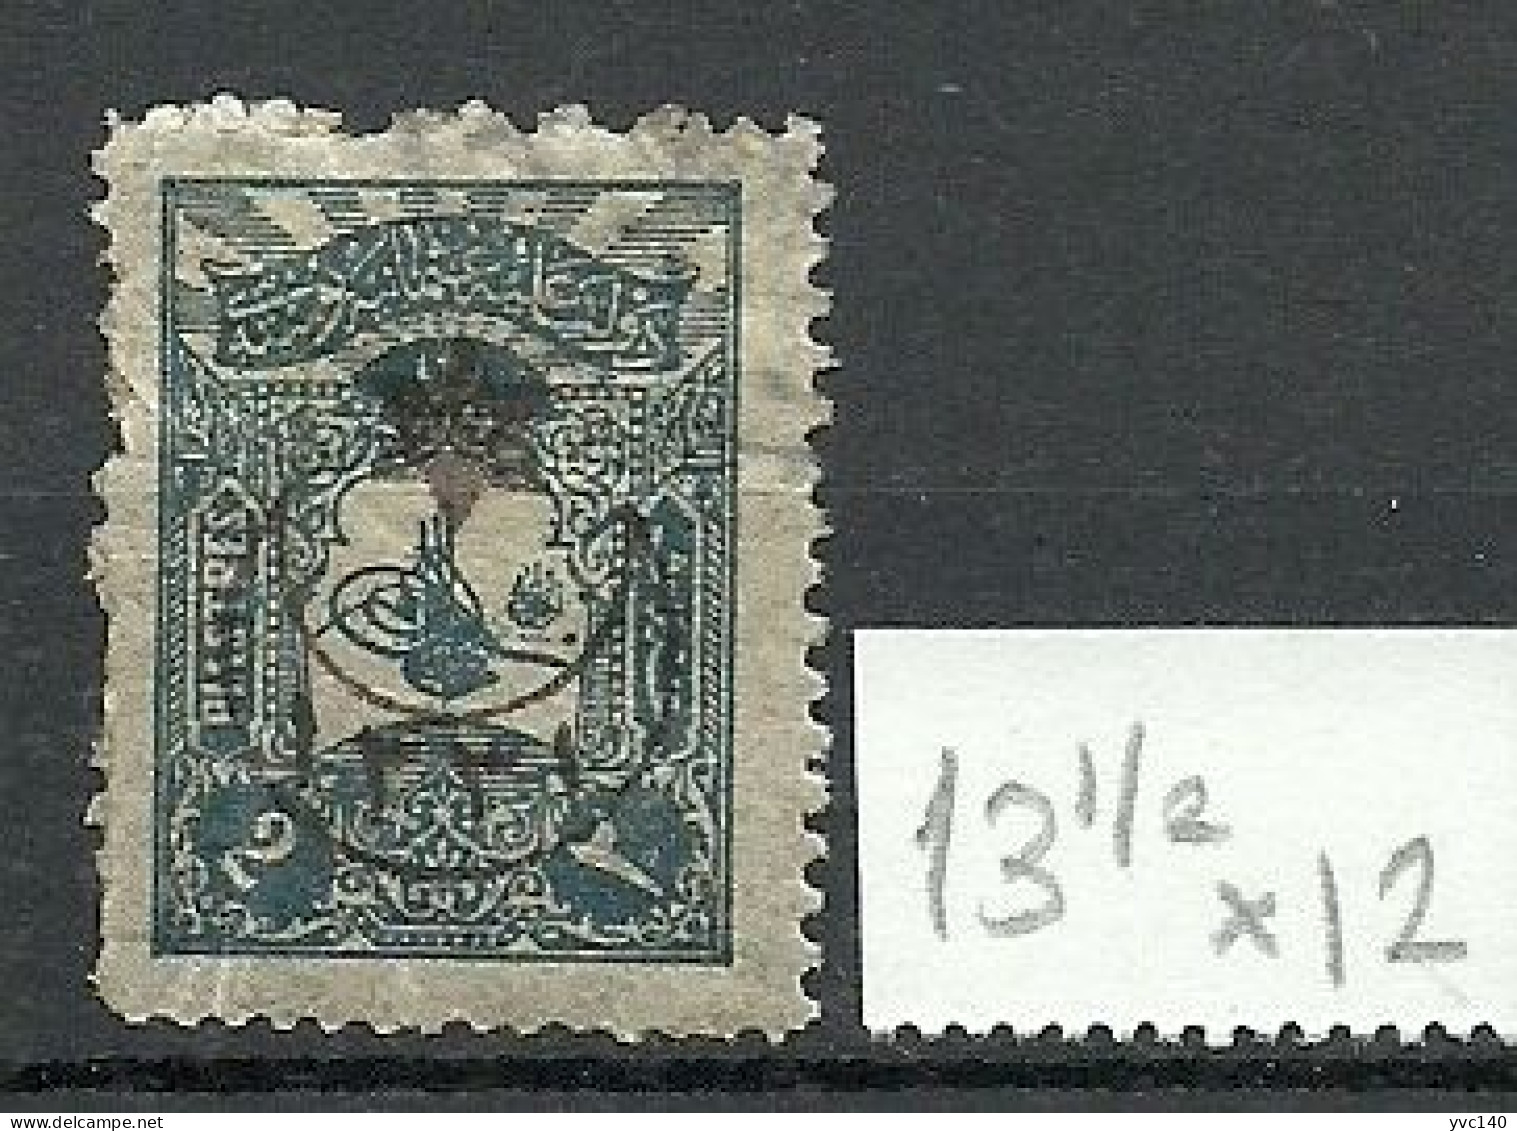 Turkey; 1915 Overprinted War Issue Stamp 2 K. "13 1/2x12 Instead Of 12 Perf." - Gebraucht